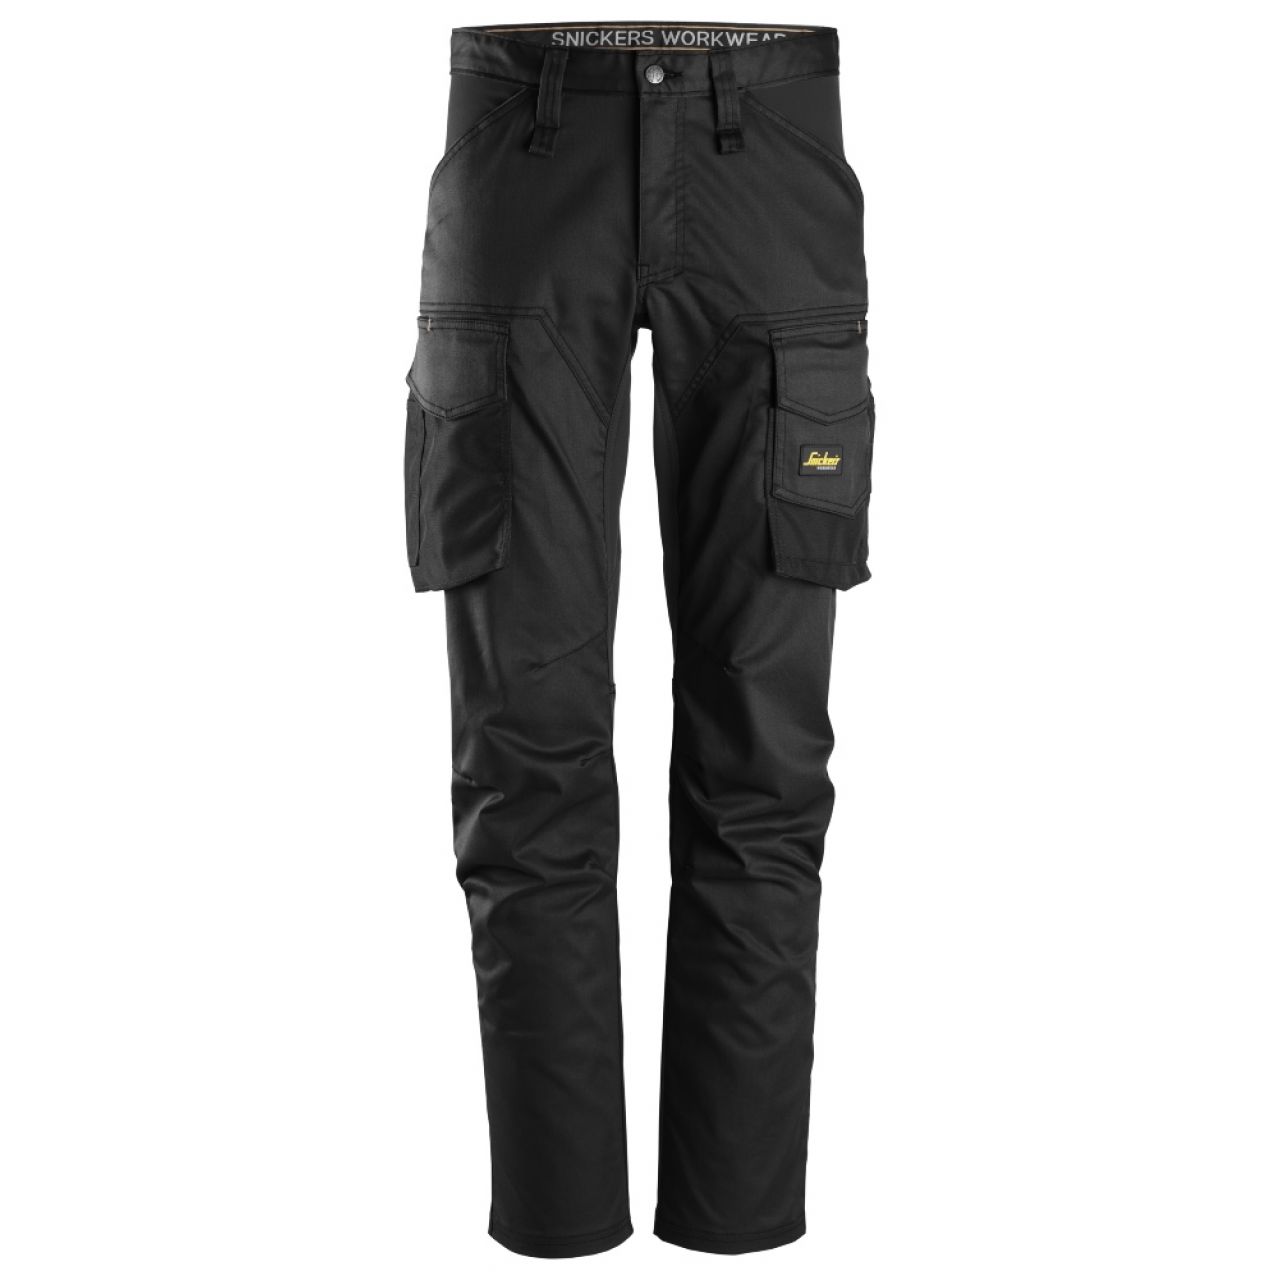 6803 Pantalones largos de trabajo elásticos sin bolsillos para las rodilleras AllroundWork negro talla 250